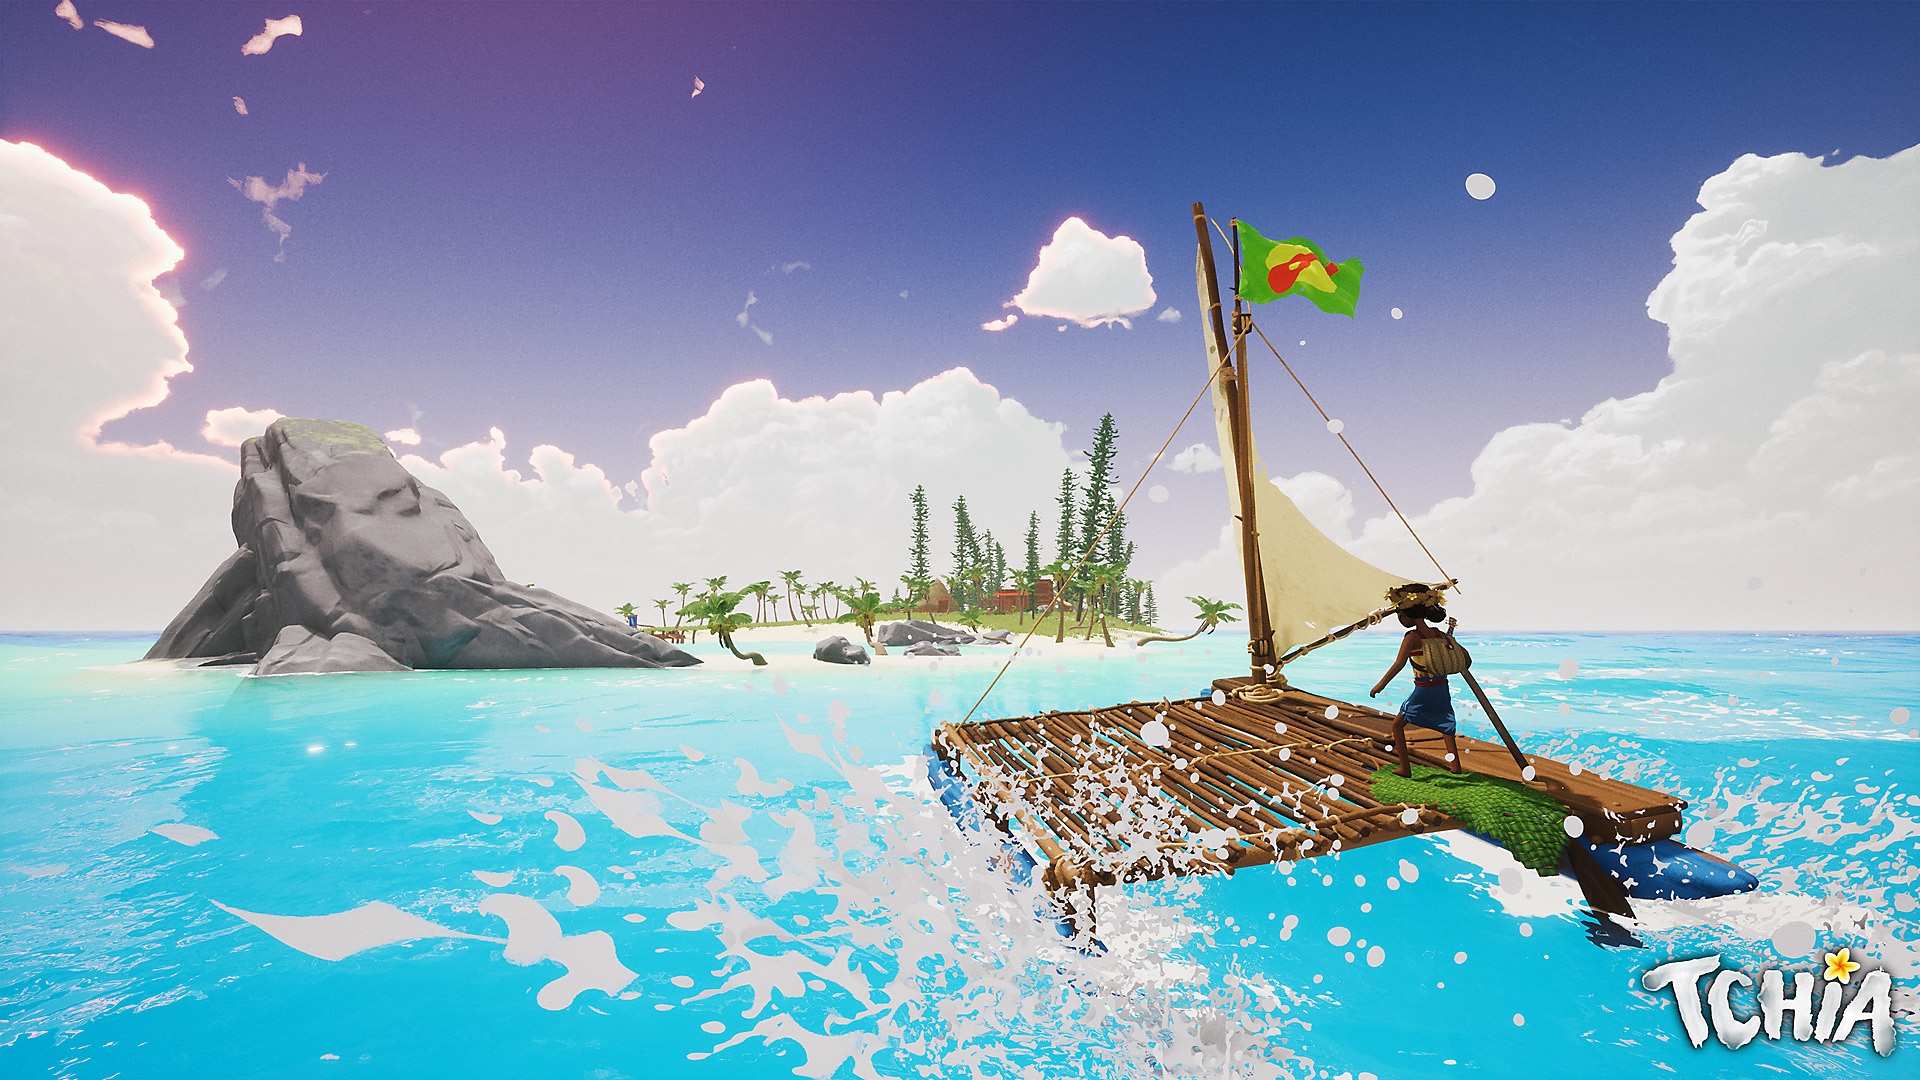 Tchia-képernyőkép, amelyen a főszereplő egy tutajon egy sziget felé vitorlázik